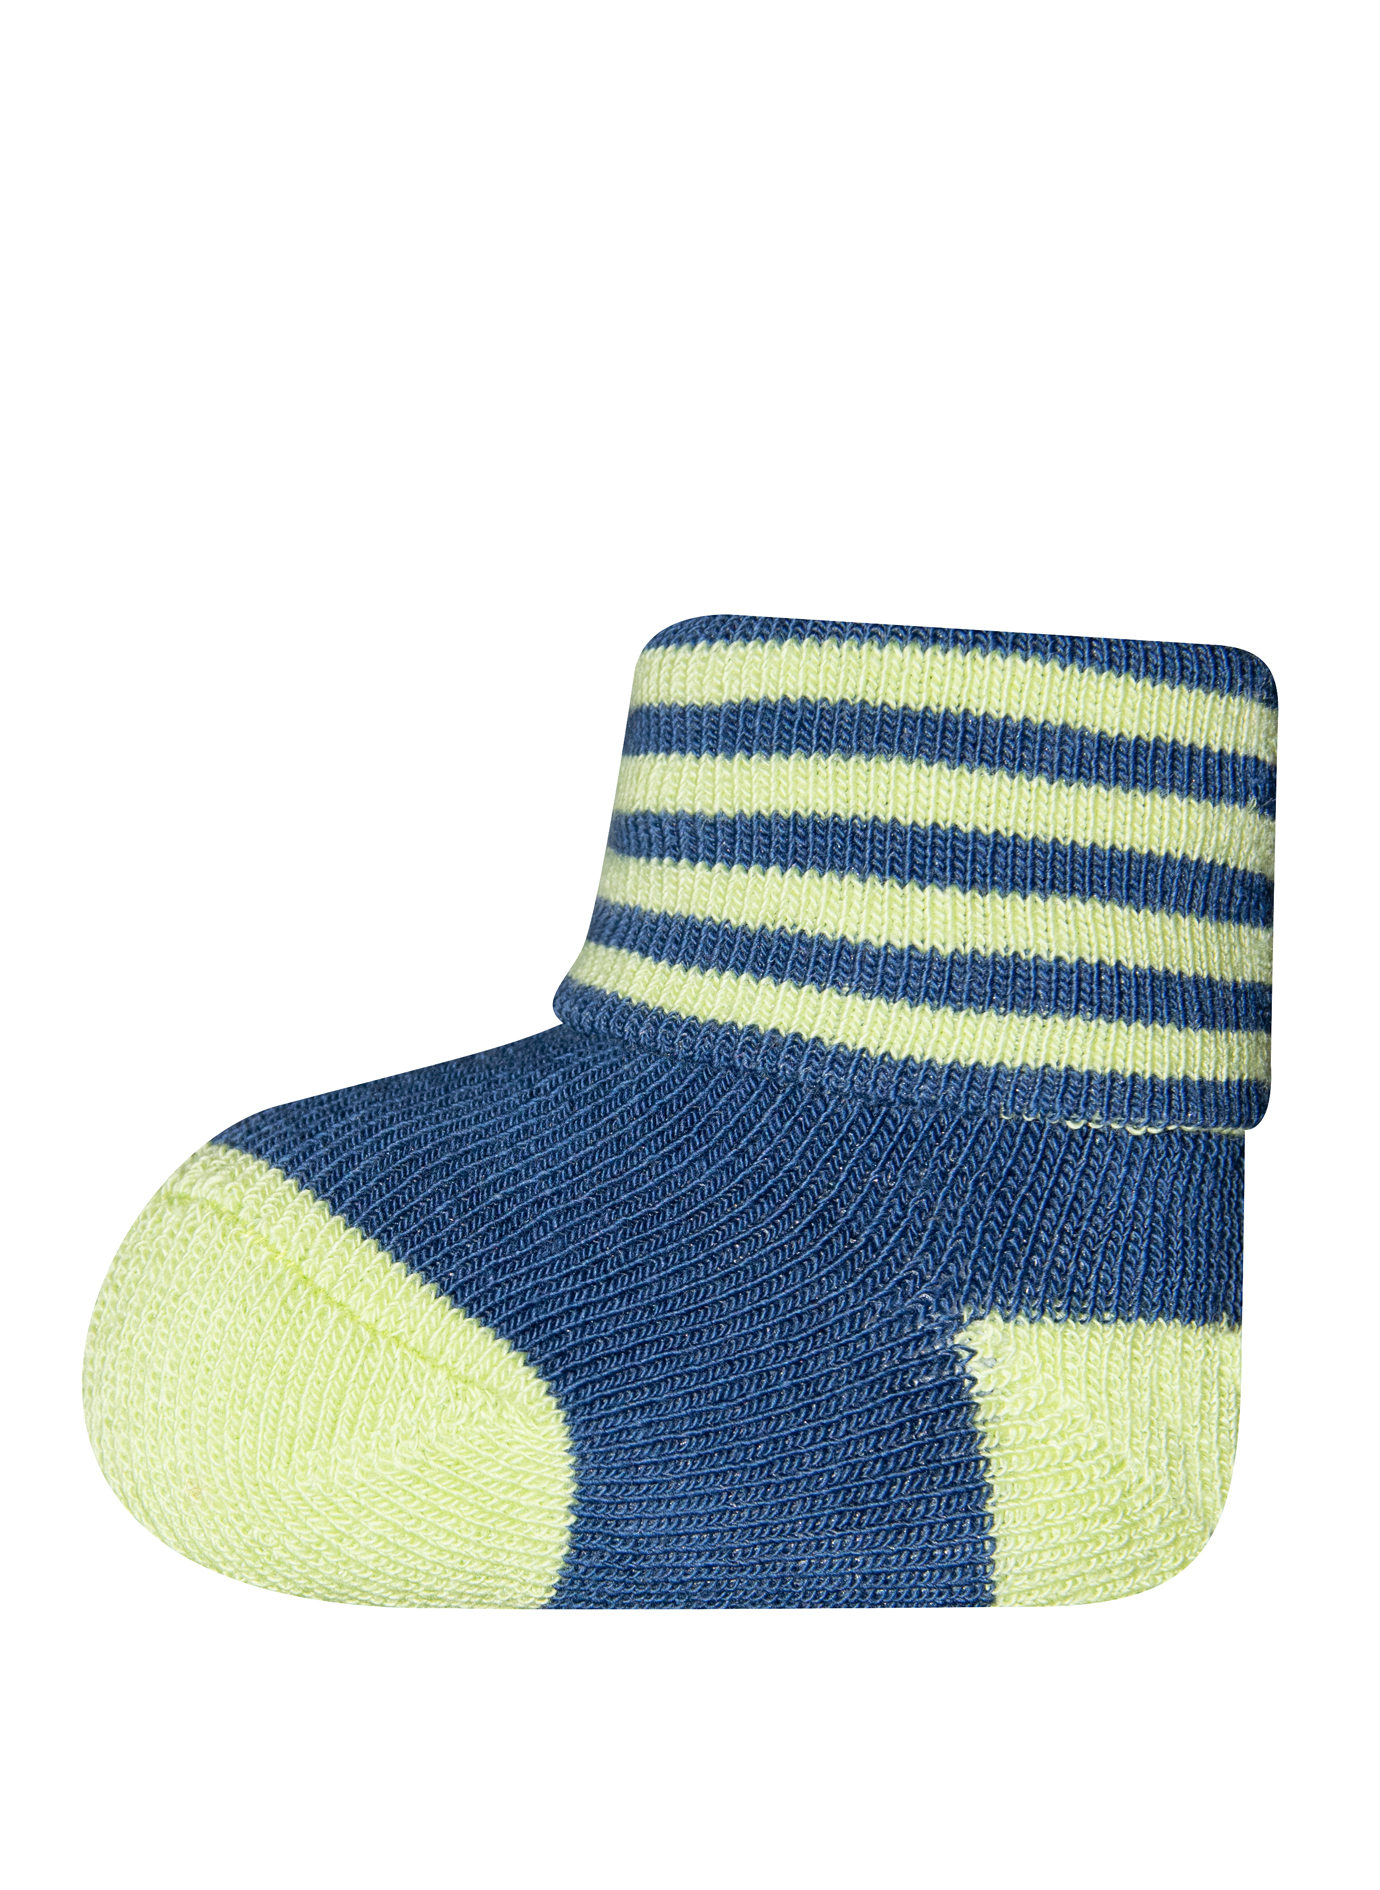 Jungen Erstlings-Socken (Dreierpack) Blau und Grün